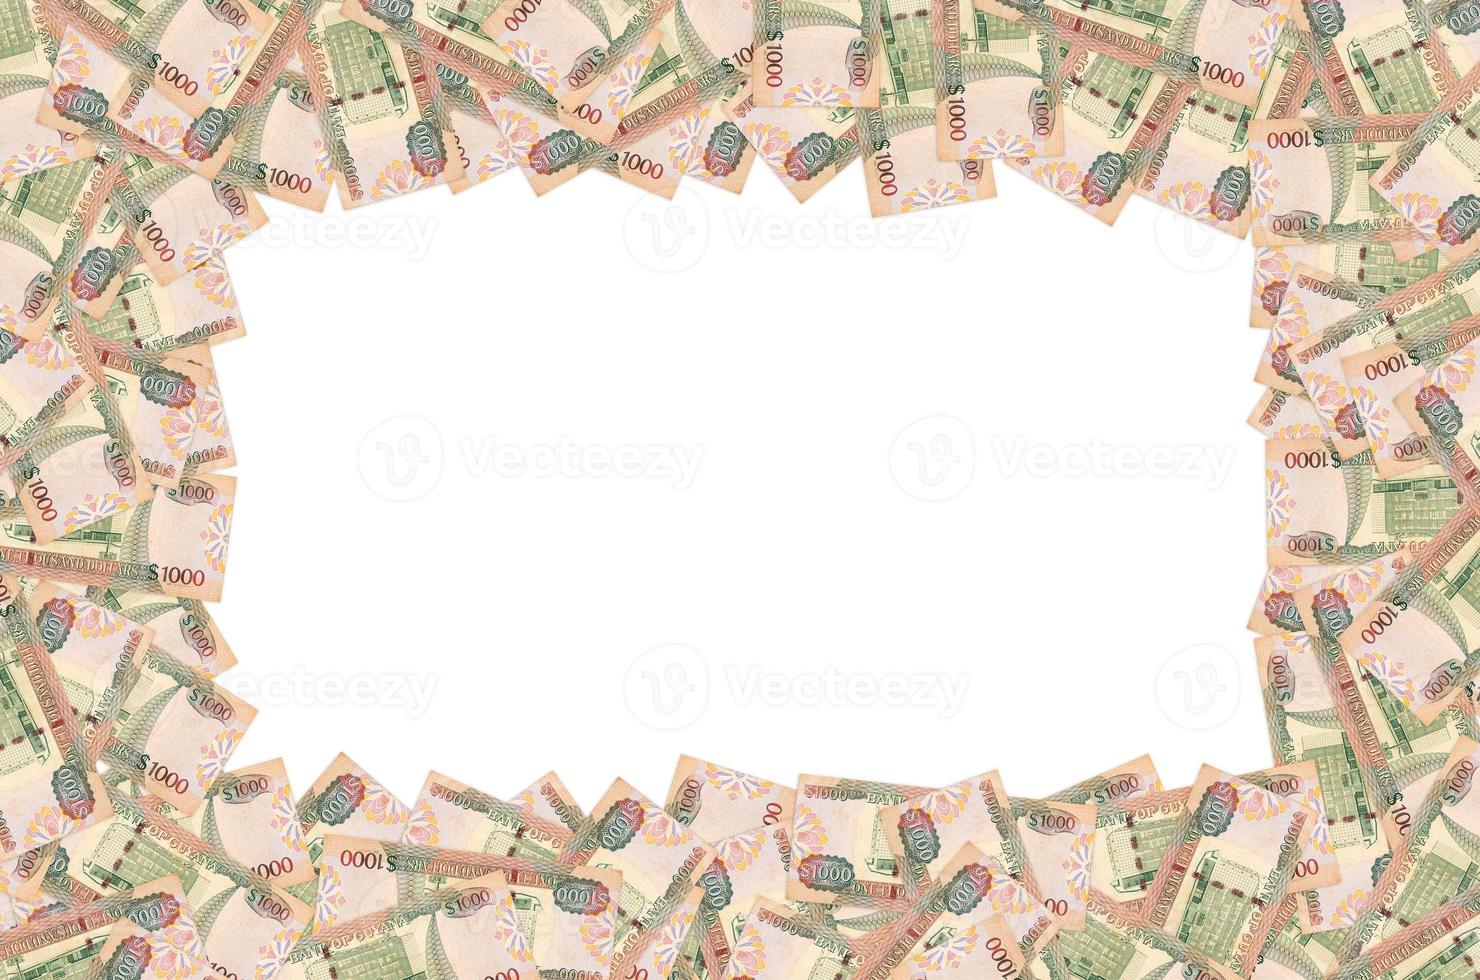 parte del patrón de billetes de 1000 dólares de guyana marrón foto